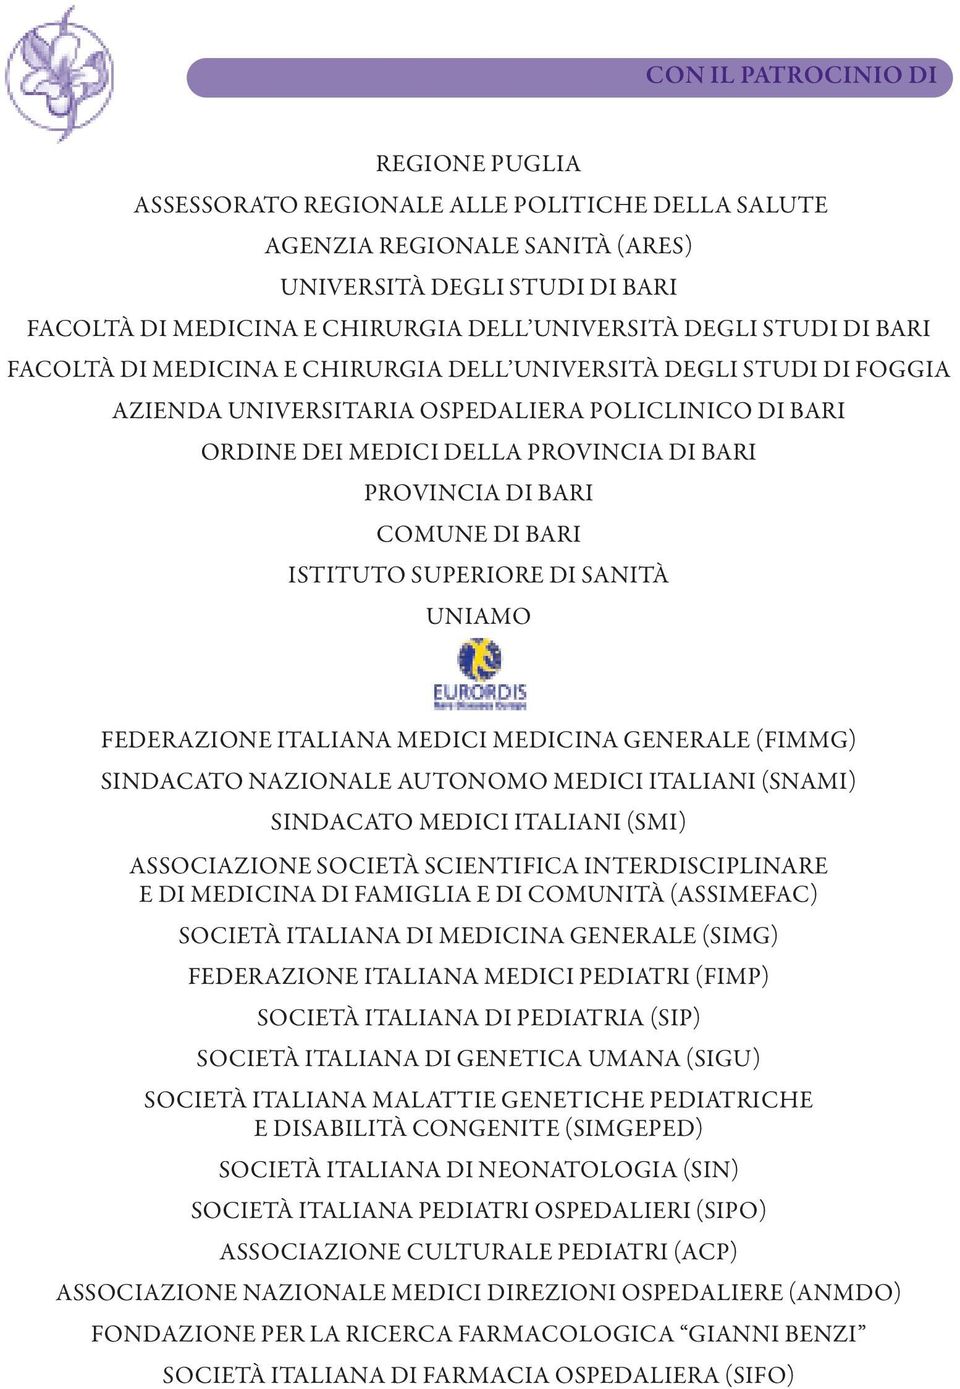 BARI COMUNE DI BARI ISTITUTO SUPERIORE DI SANITÀ UNIAMO FEDERAZIONE ITALIANA MEDICI MEDICINA GENERALE (FIMMG) SINDACATO NAZIONALE AUTONOMO MEDICI ITALIANI (SNAMI) SINDACATO MEDICI ITALIANI (SMI)